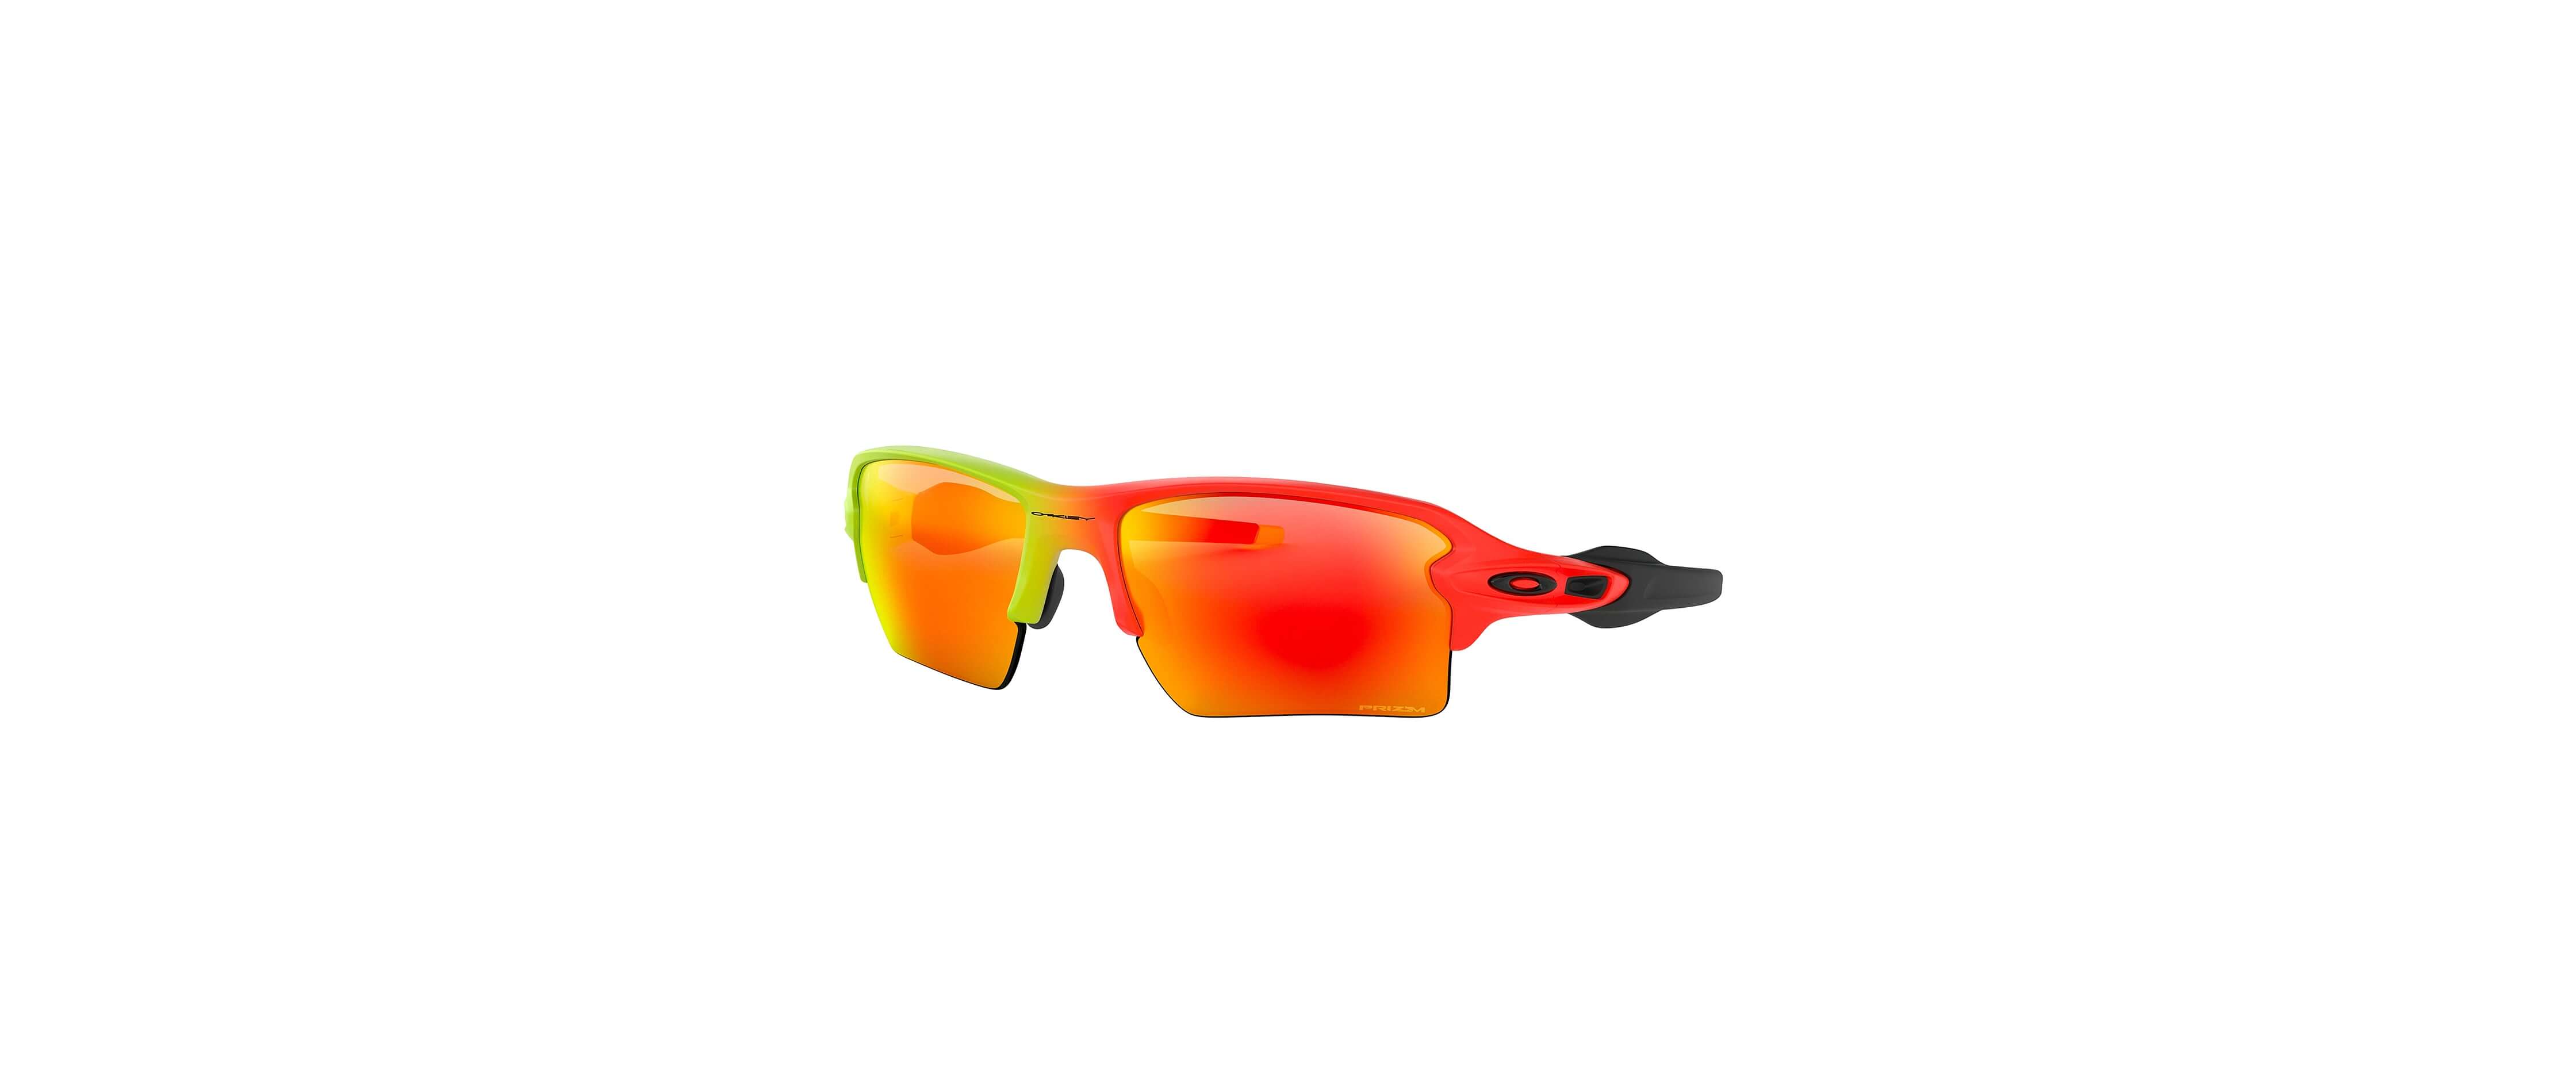 Oakley Flak® 2.0 XL Sunglasses - Men's Sunglasses u0026 Glasses in Harmony Fade  | Buckle